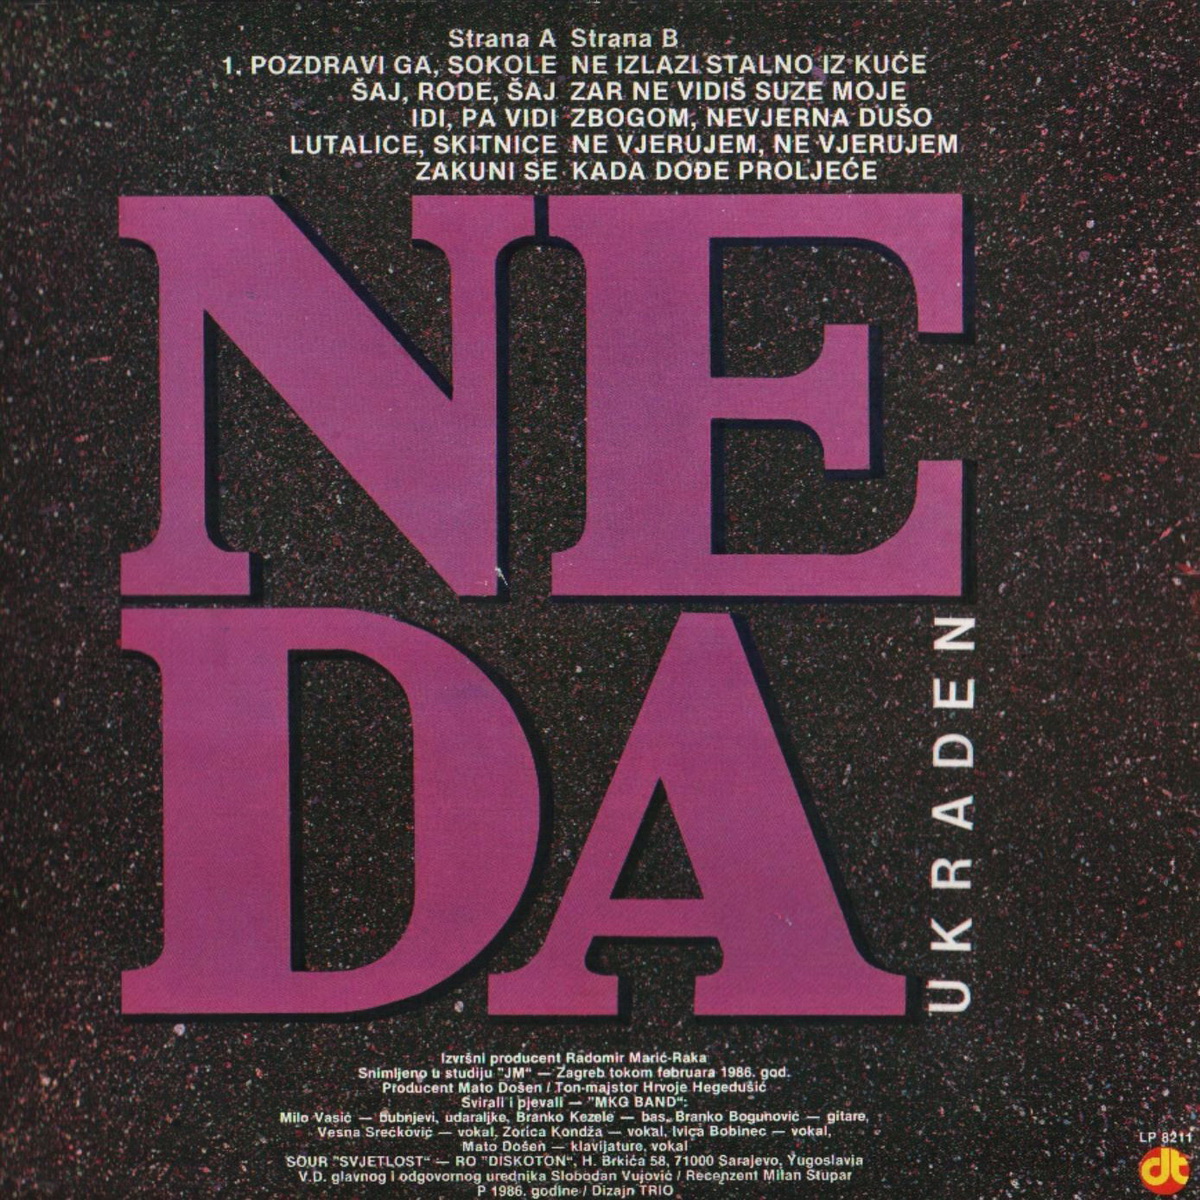 Neda Ukraden 1986 Saj saj b